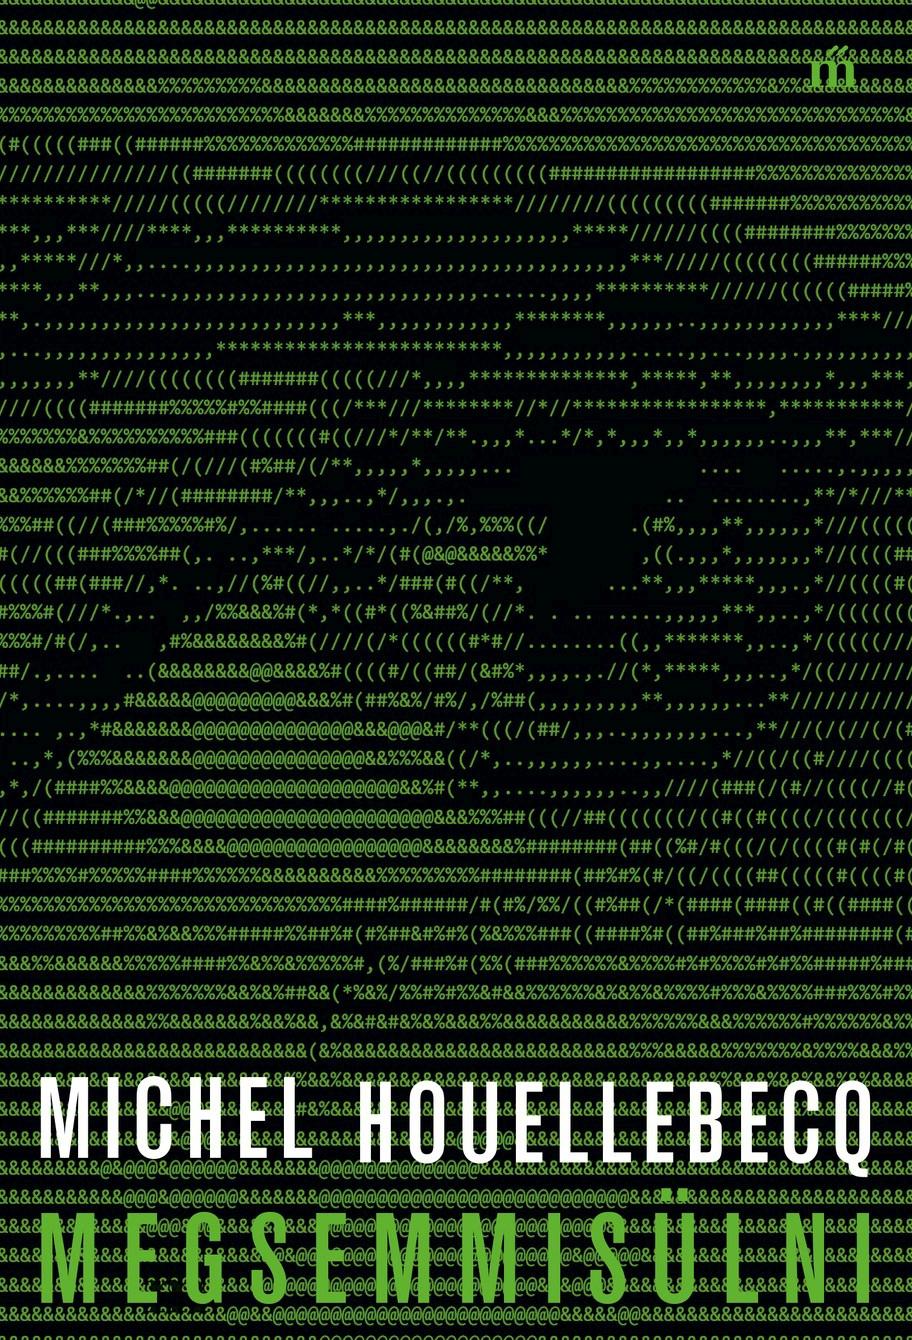 Michel Houellebecq - Megsemmisülni